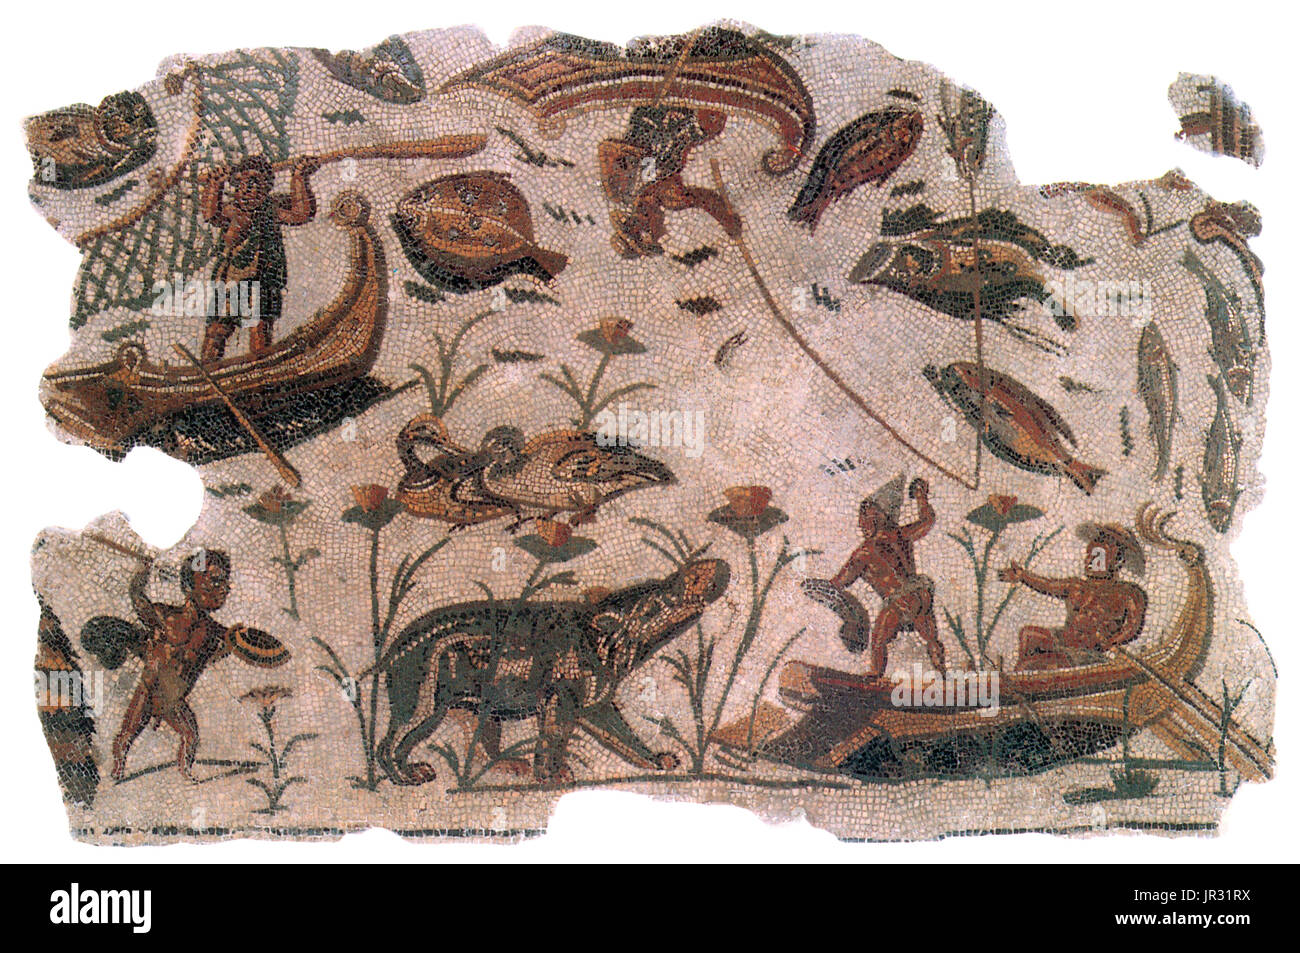 El nilótico mosaico que representa los pigmeos cazando un hipopótamo. La civilización romana, siglo 3. Mosaicos Romanos se construyen de bloques geométricos llamados teselas, colocados juntos para crear las formas de figuras, motivos y patrones. Materiales para teselas fueron obtenidos de fuentes locales de piedra natural, con las adiciones de cortan ladrillos, baldosas y cerámicas, crear sombras de colores, predominantemente, azul, negro, rojo, blanco y amarillo. Polychrome patrones fueron más comunes, pero se conocen ejemplos de monocromo. Foto de stock